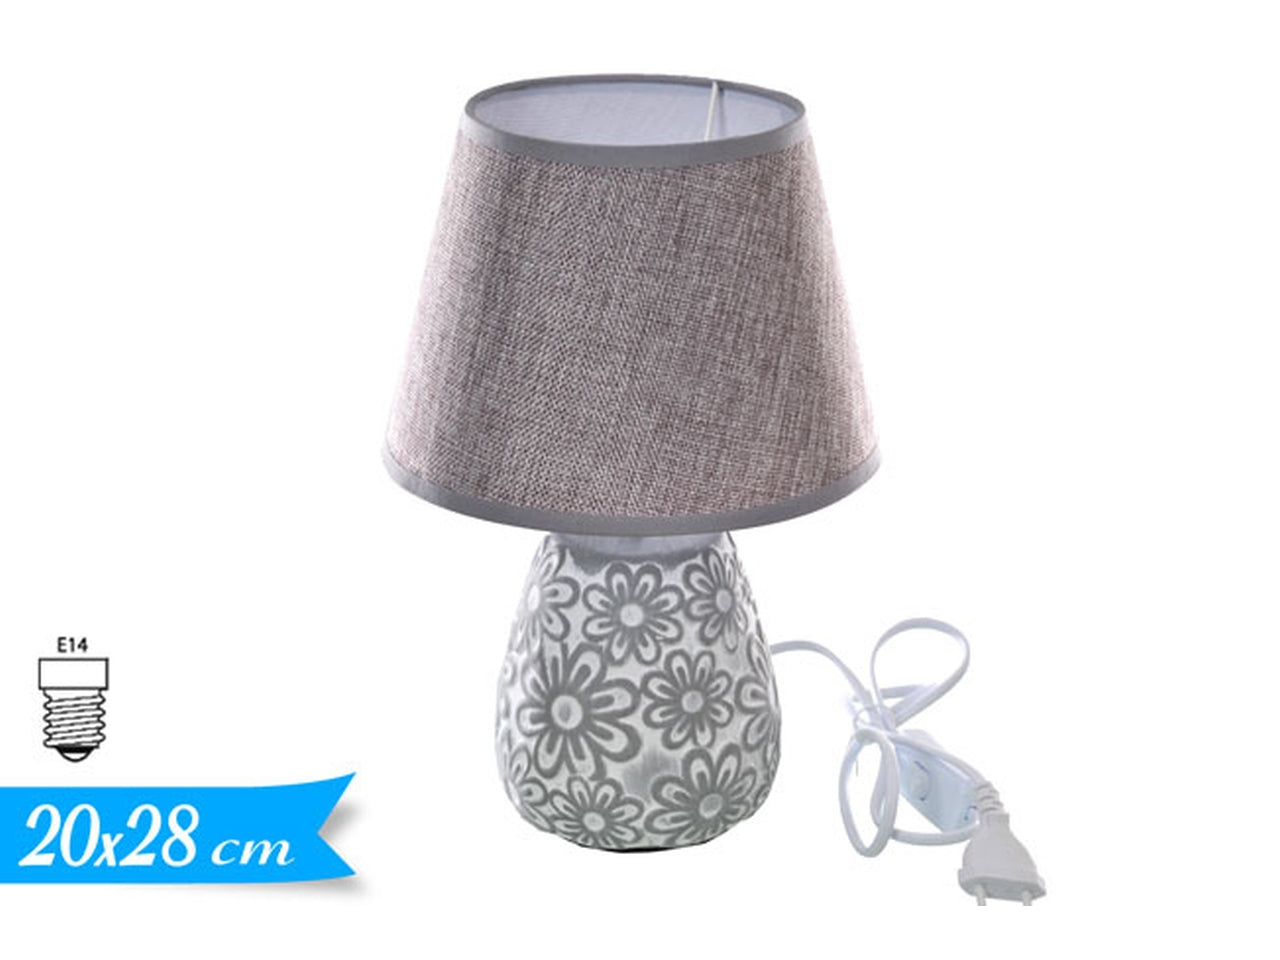 Lampada da tavolo bianco e grigio luce diffusa stle shabby chic in ceramica e paralume in tessuto, 20x28 cm Golden Hill